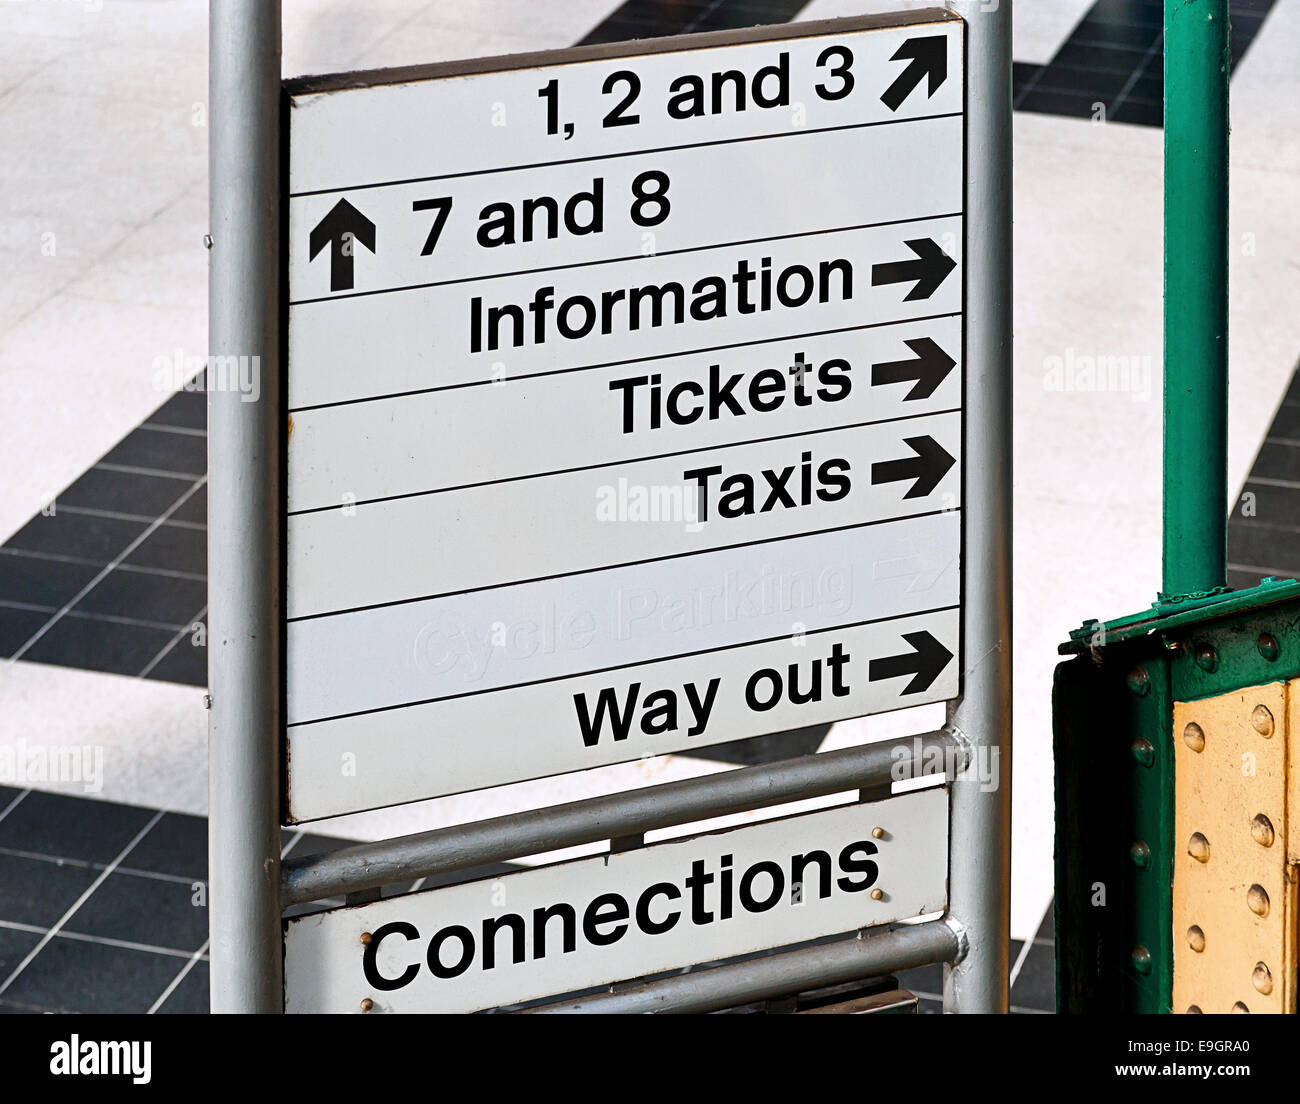 Dirección o signo de la información en inglés en una estación de tren funcionan generalmente por British Rail y utilizado para guiar a los viajeros. Foto de stock